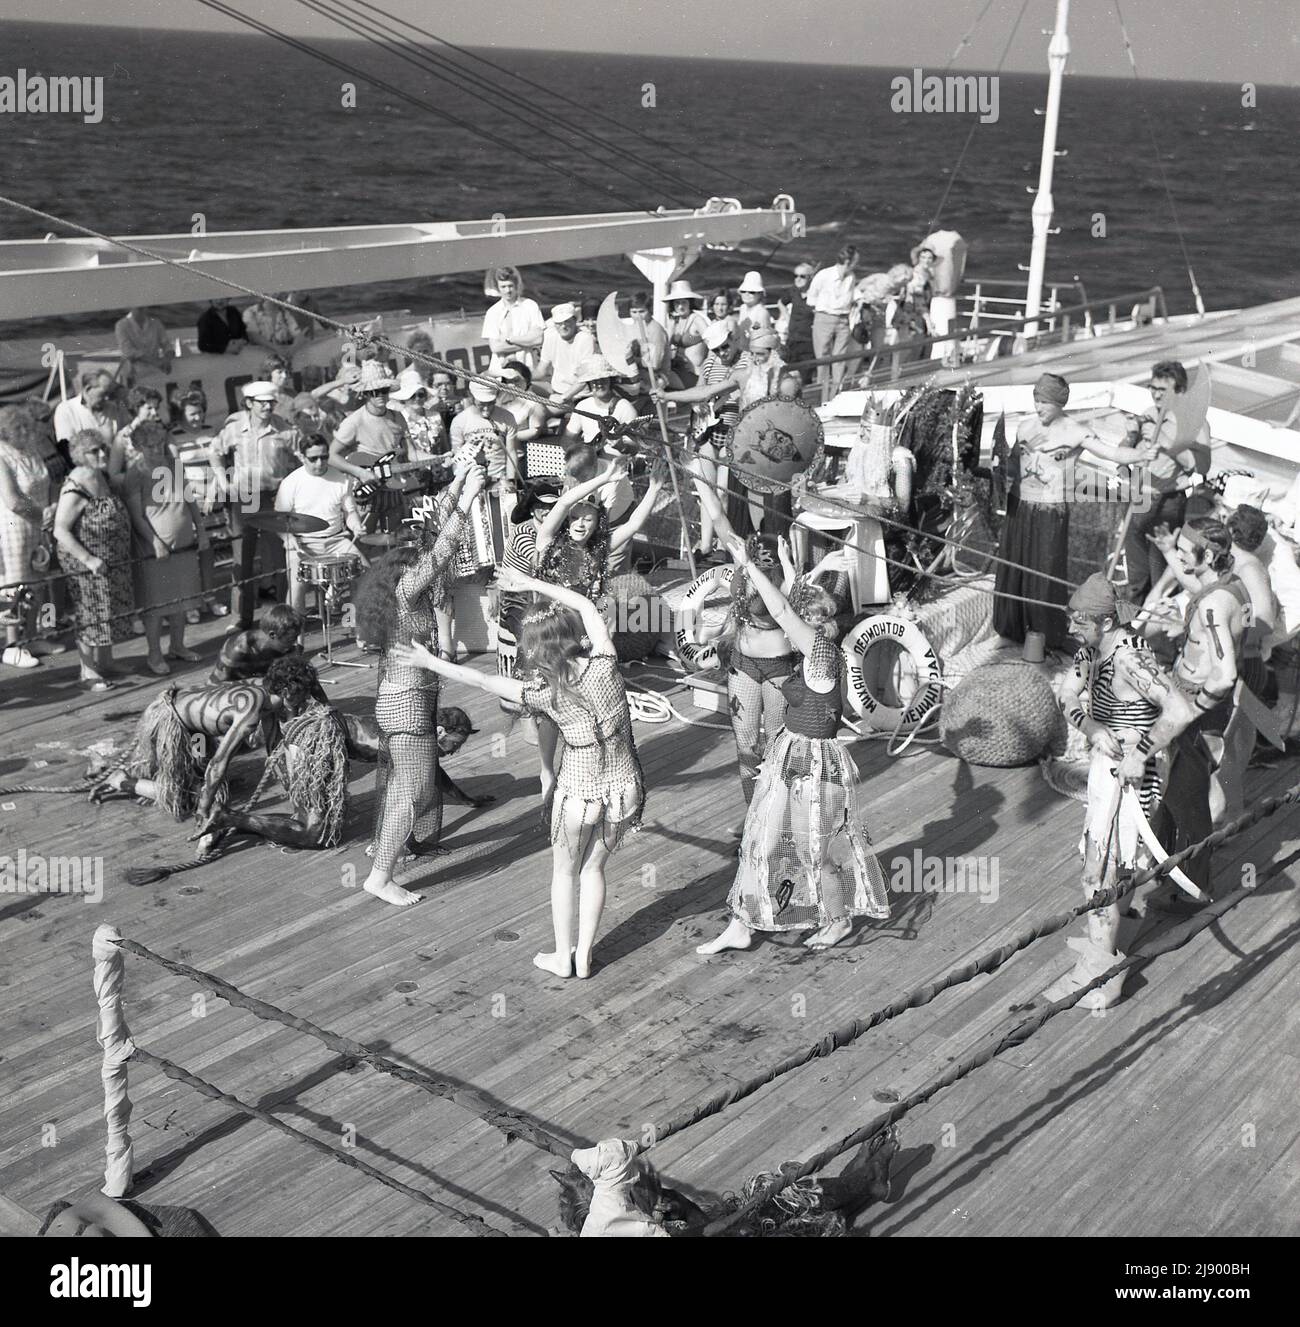 1960s, historisch, mitten im Ozean, an Deck des Sagafjord-Kreuzfahrtschiffs, spielt eine Band Musik als Passagiere, die sich verkleidet haben, um die Linienübergangszeremonie, eine Wassertaufe oder ein Ritual zu feiern, wenn ein Schiff den Äquator überquert, Wird manchmal als eine Intiation in den Hof von König Neptun bezeichnet. Stockfoto